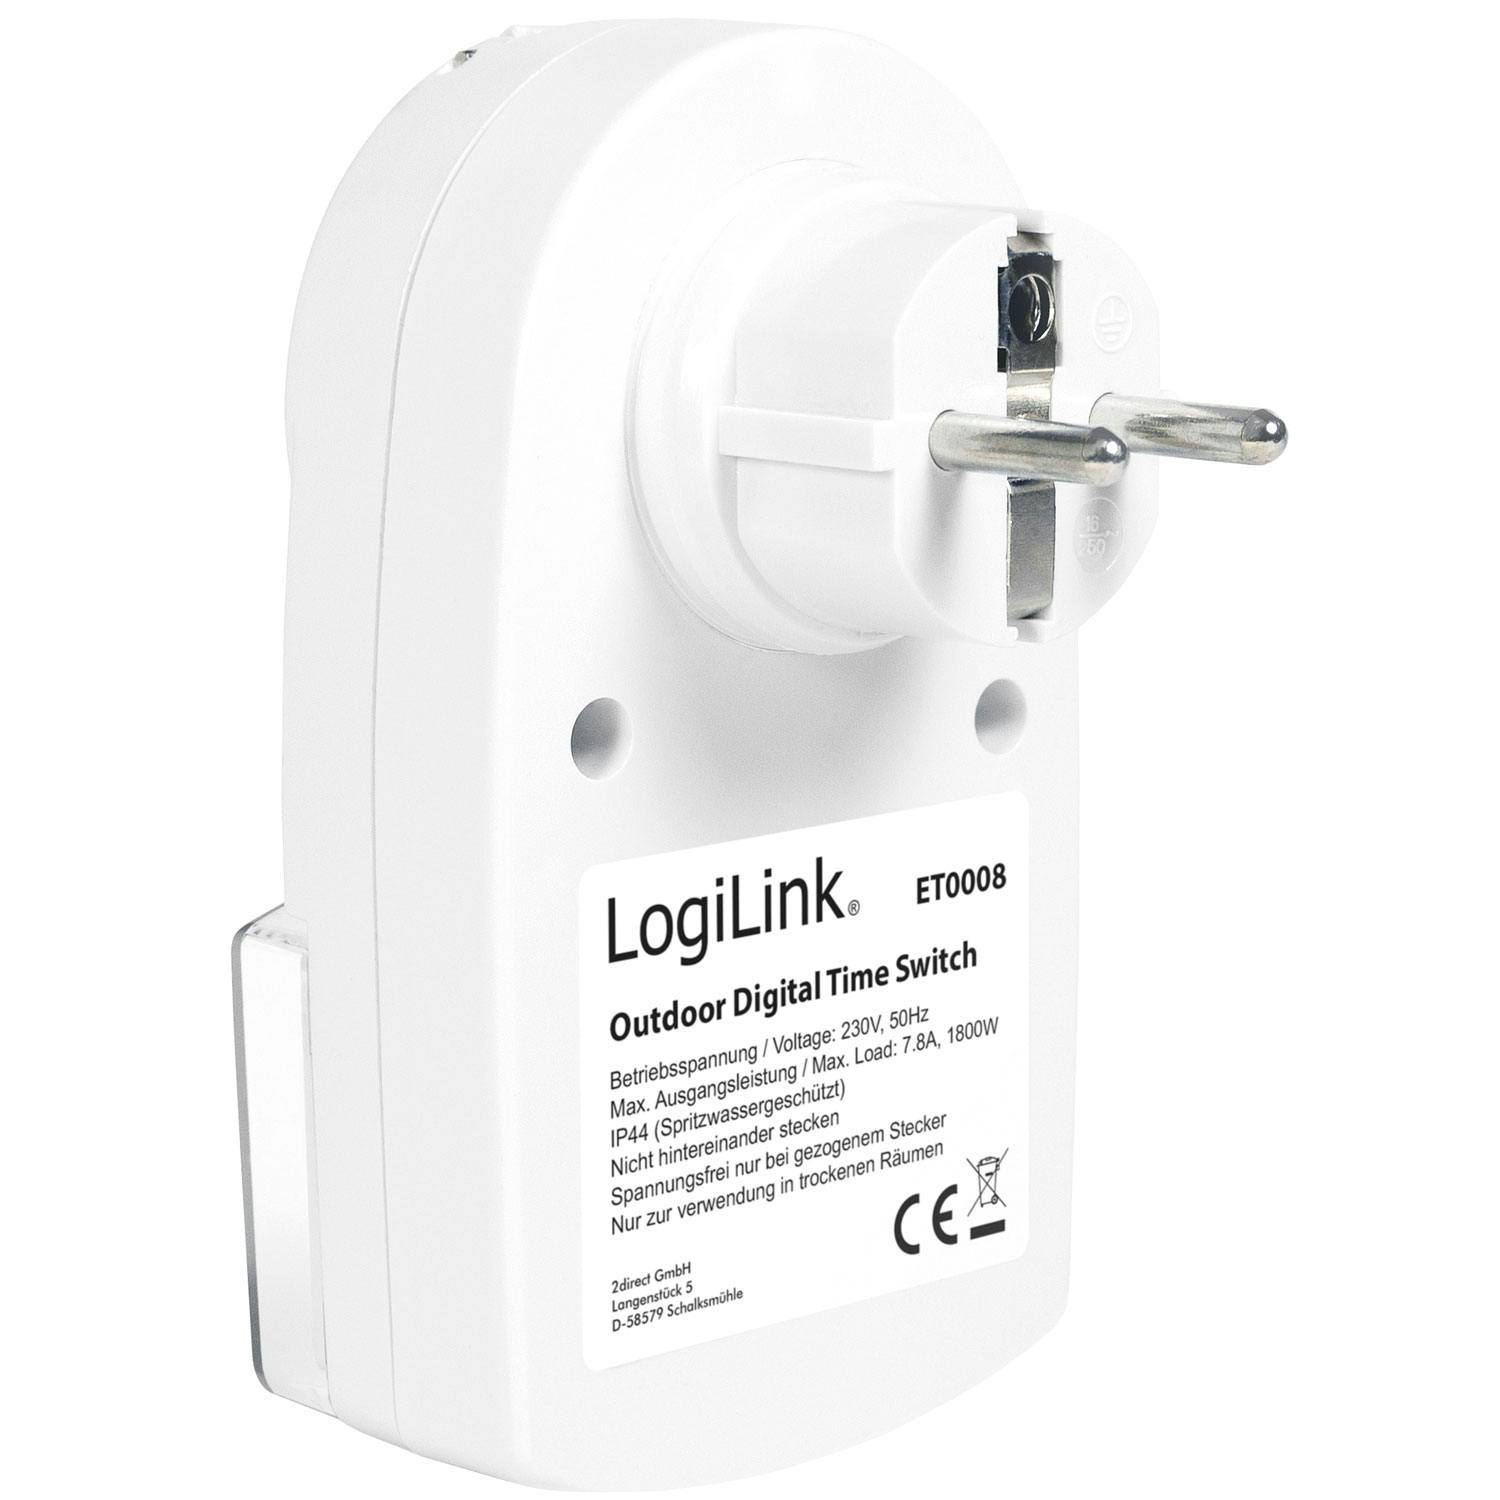 Digitale Zeitschaltuhr für den Außenbereich Logilink 1800W IP44